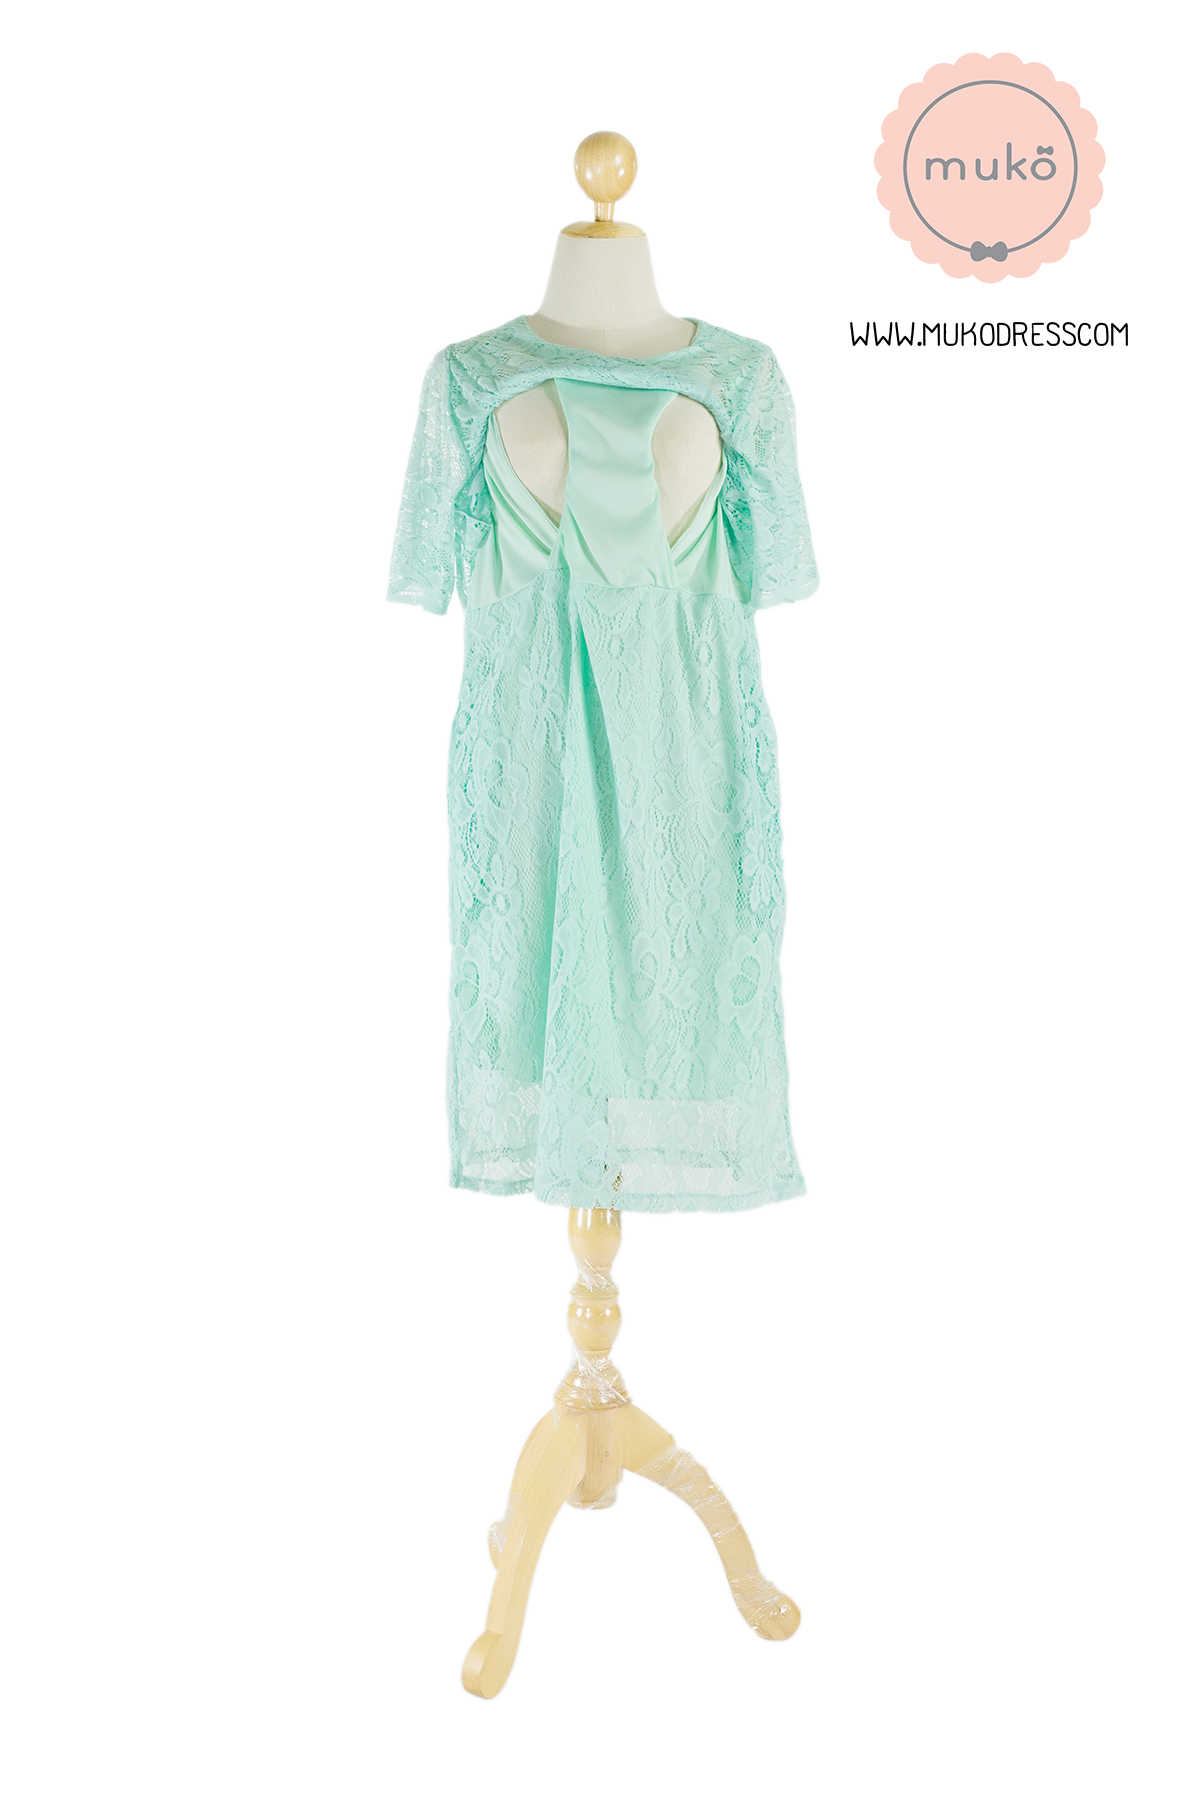 Muko Rosie Lace Dress เดรสเปิดให้นม คลุมท้อง DZ23-002  สีเขียวมิ้นท์